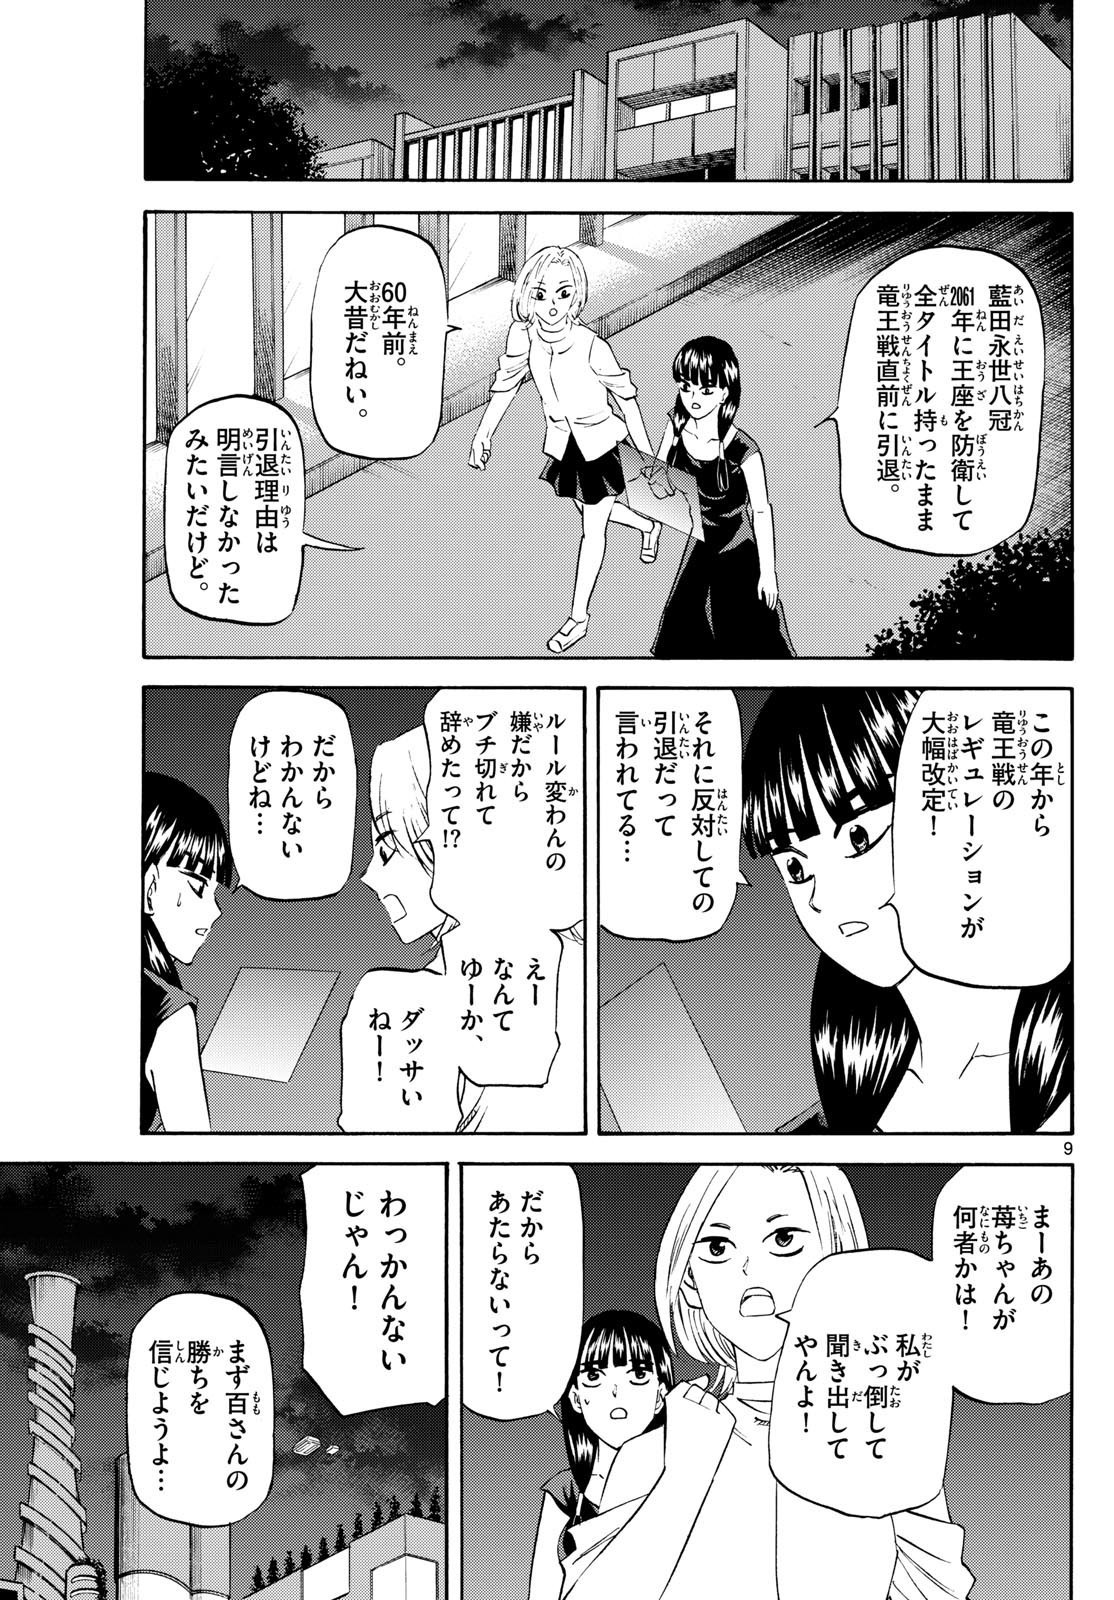 Ryu-to-Ichigo - Chapter 199 - Page 9